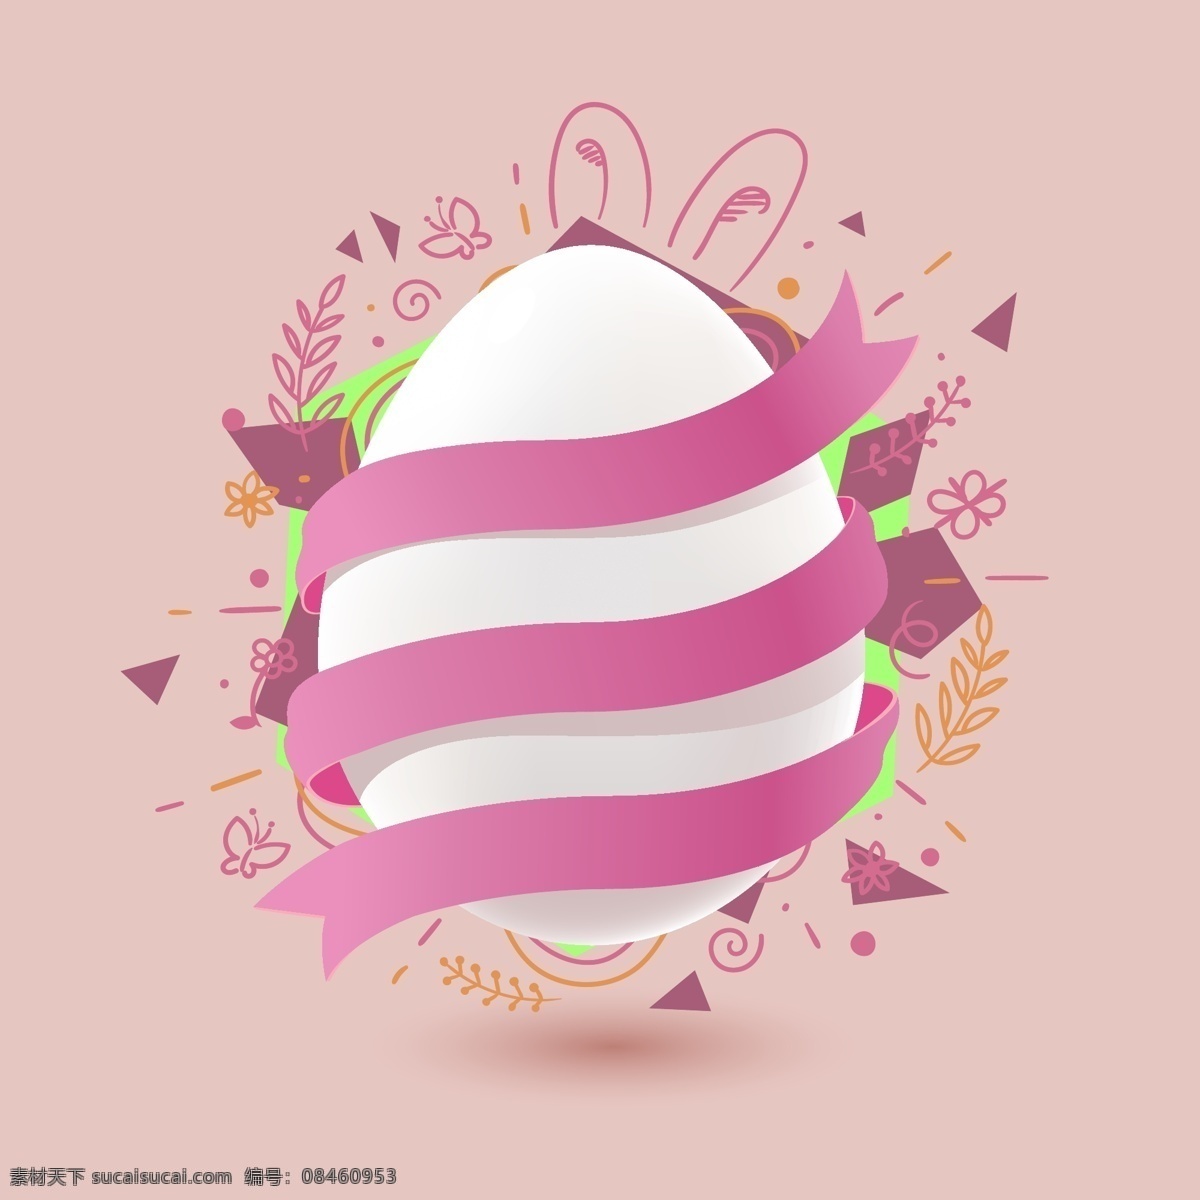 复活节 鸡蛋 多彩 春 颜色 开朗 盛开 胶带 鲜花 白 粉红色 彩蛋 矢量素材 生活百科 休闲娱乐